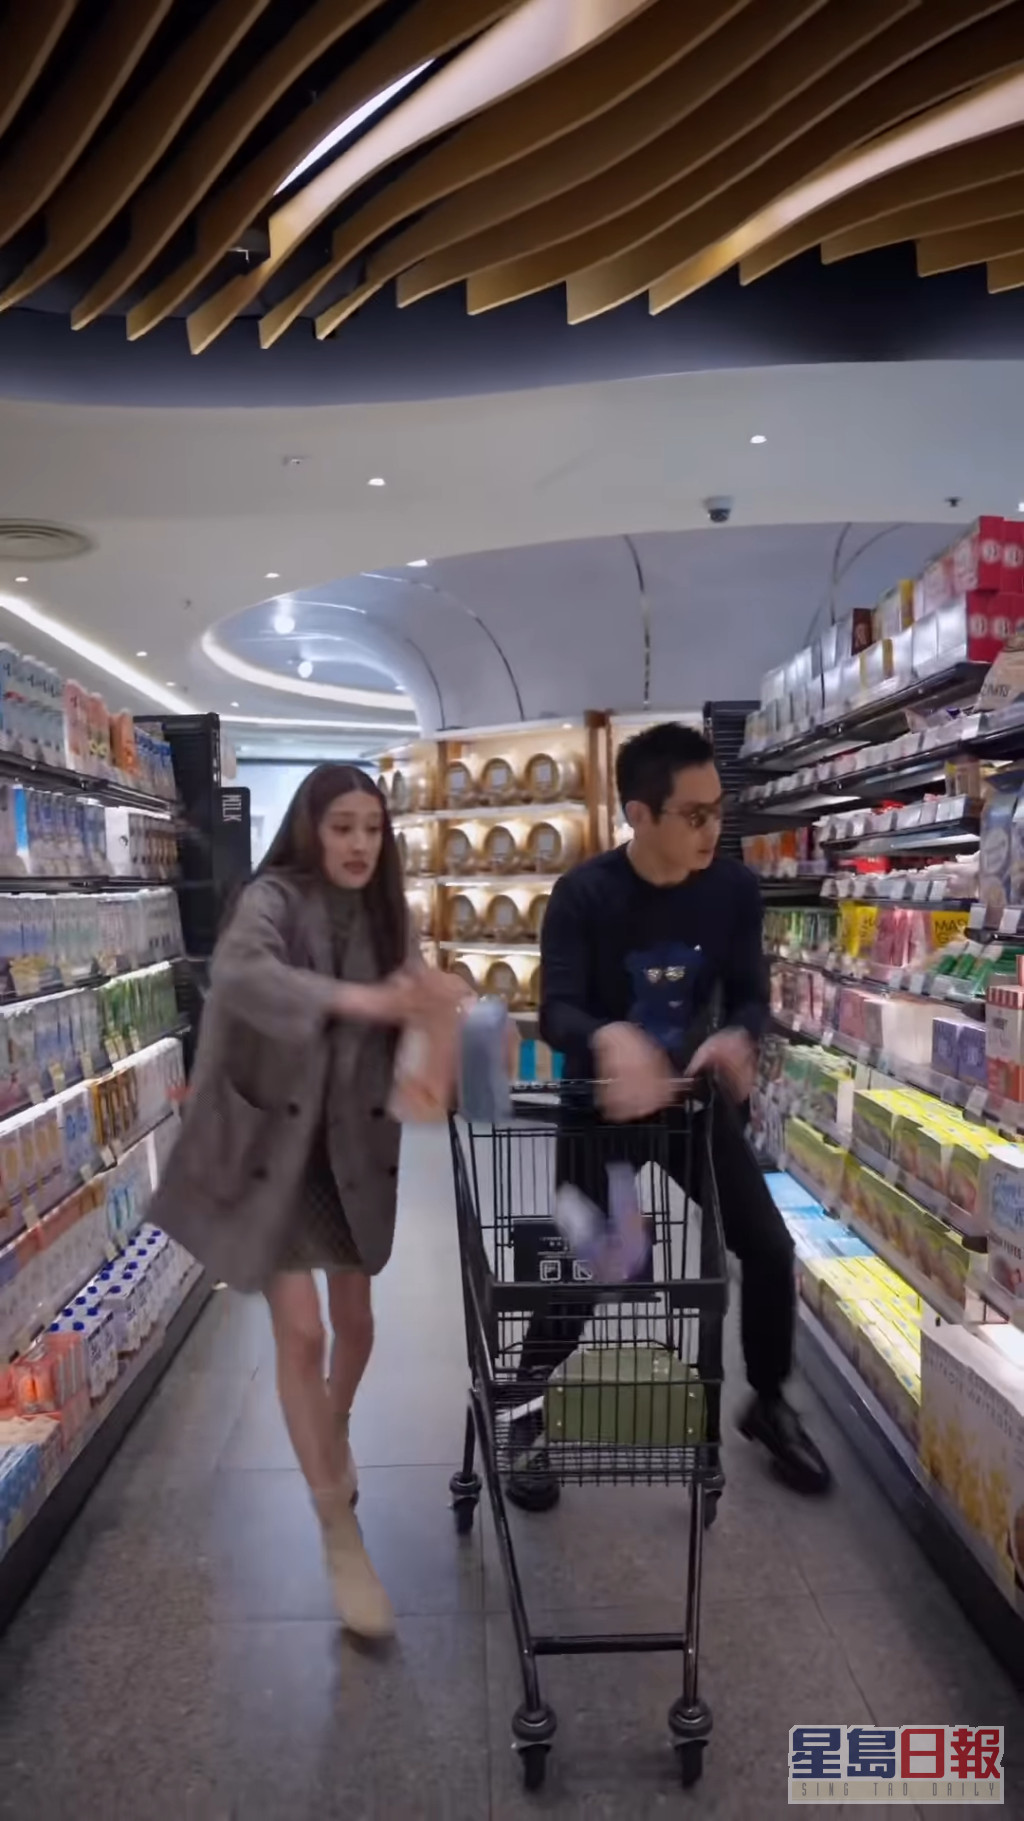 短片後段的產後生活，陳凱琳與鄭嘉穎去到超市即極速狂掃果汁、零食等食物用品給小朋友。